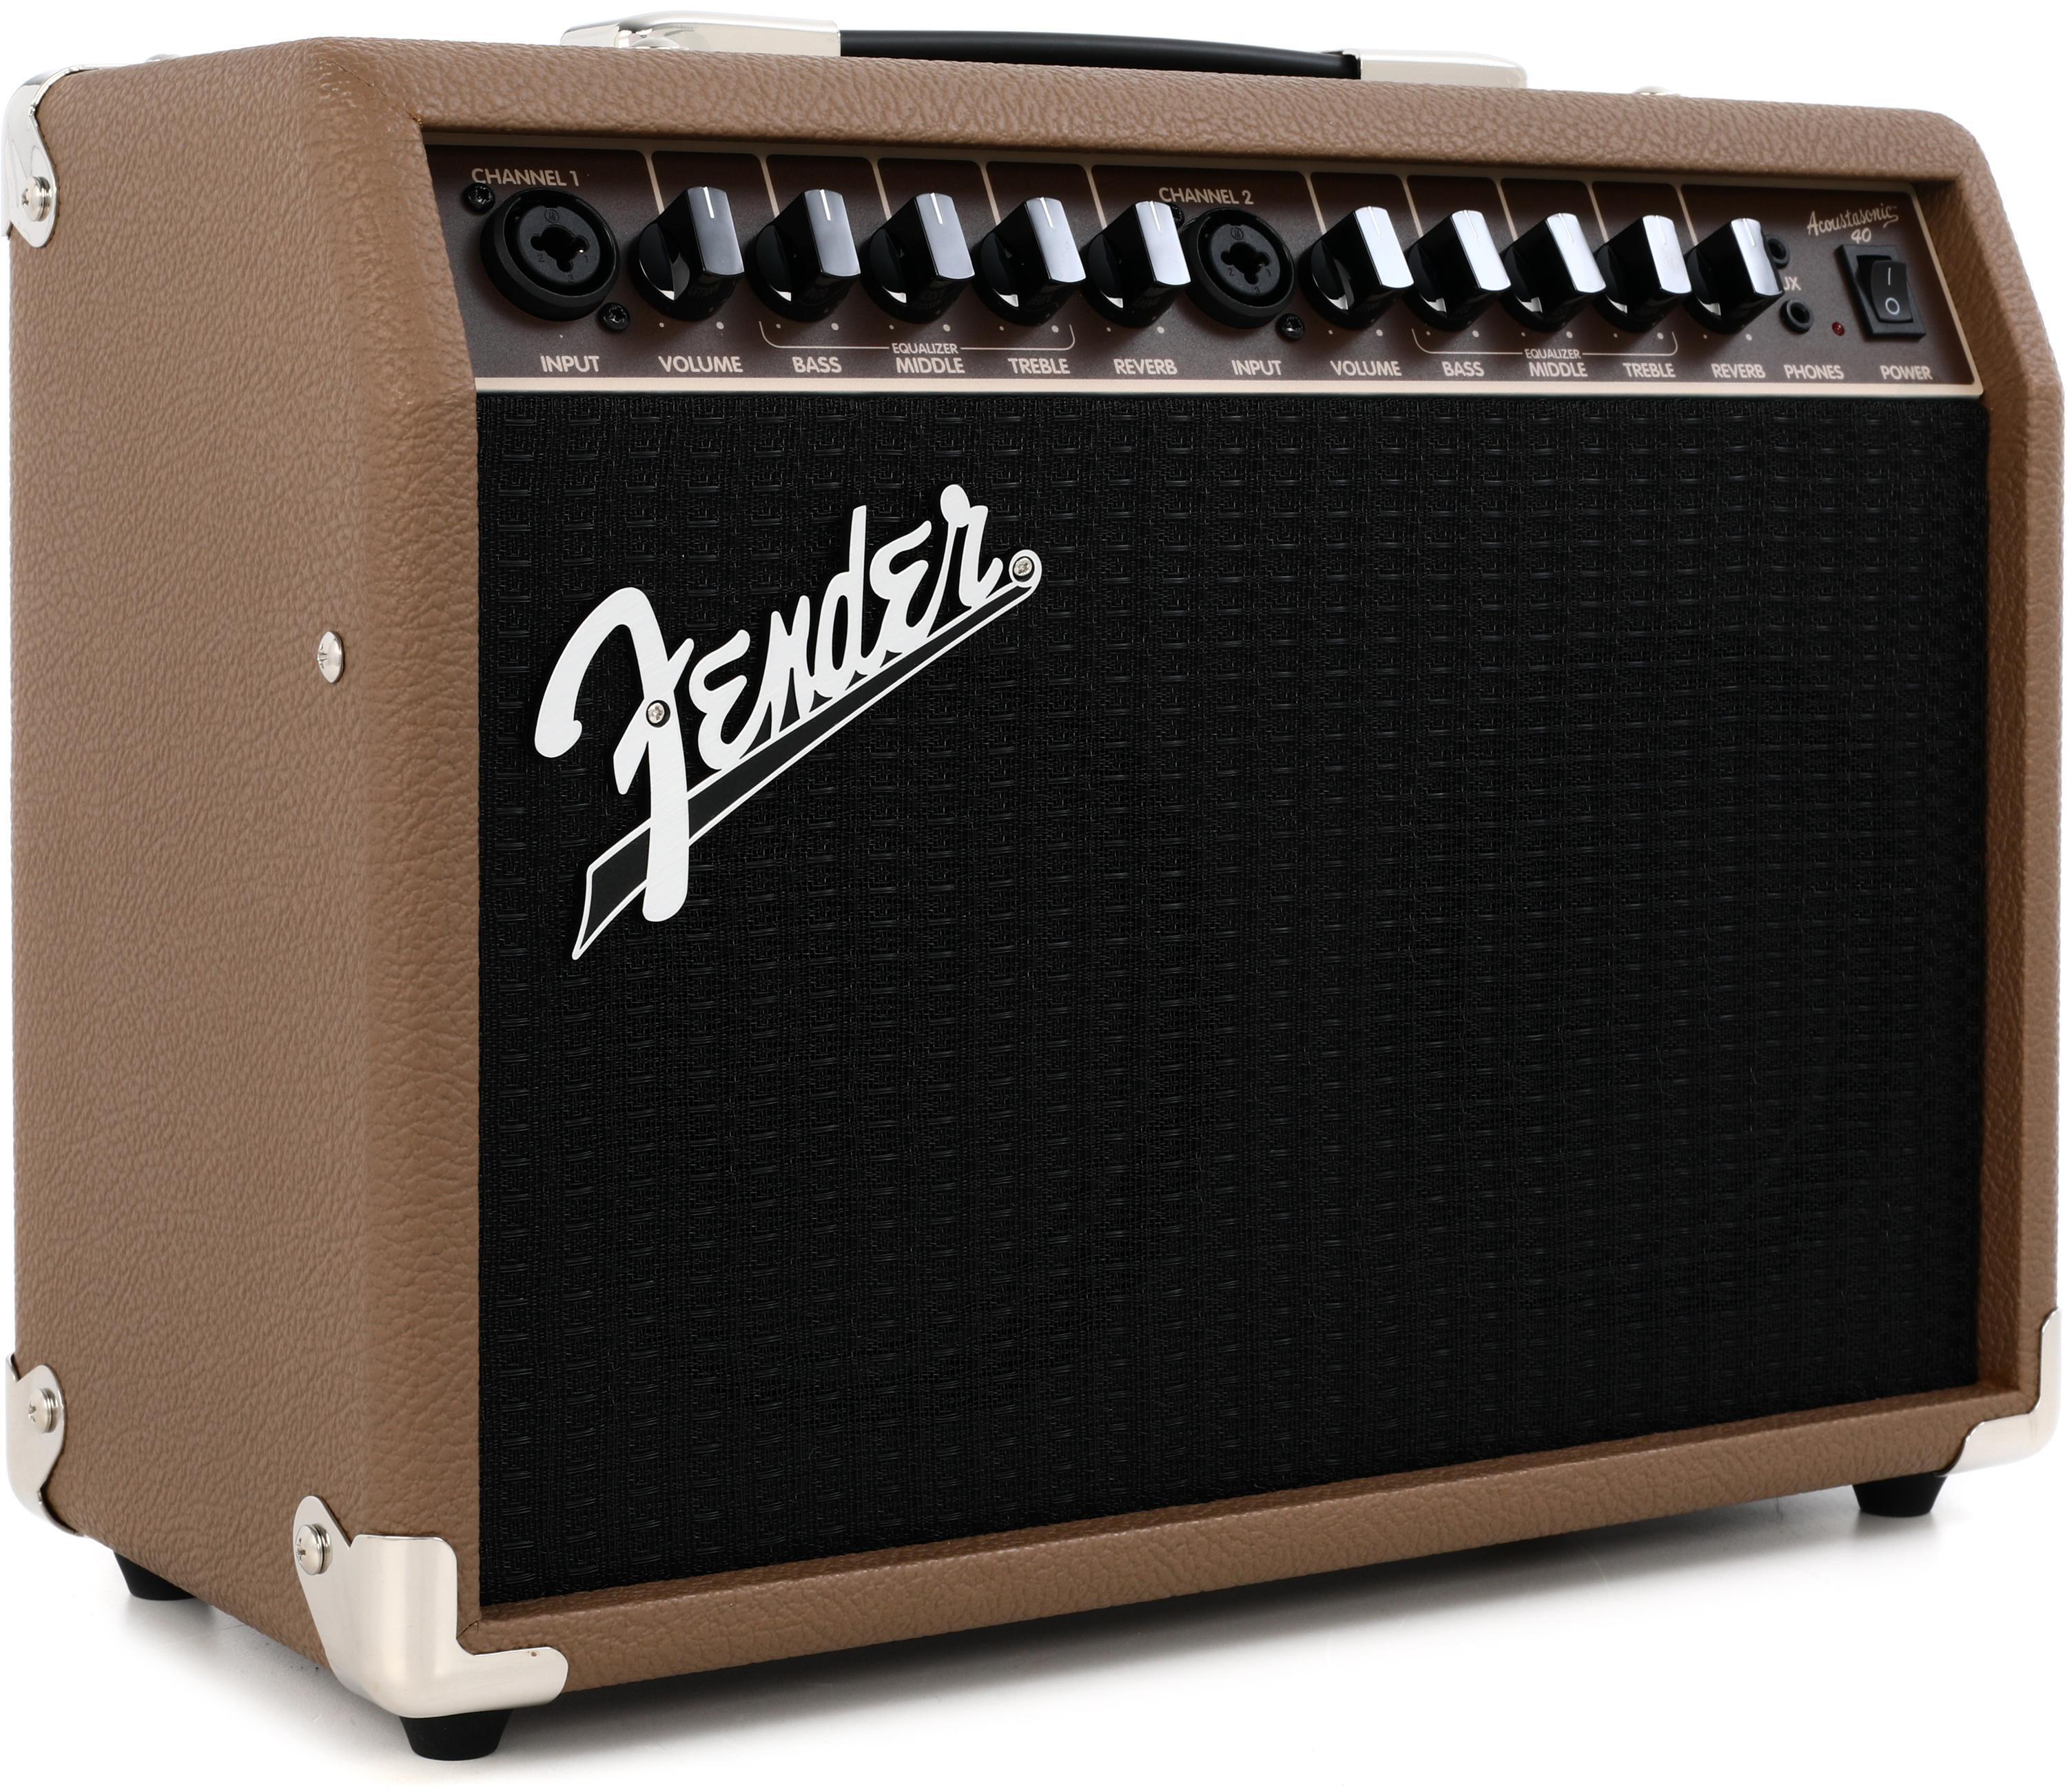 Bundled Item: Fender Acoustasonic 40 - 40-watt Acoustic Amp